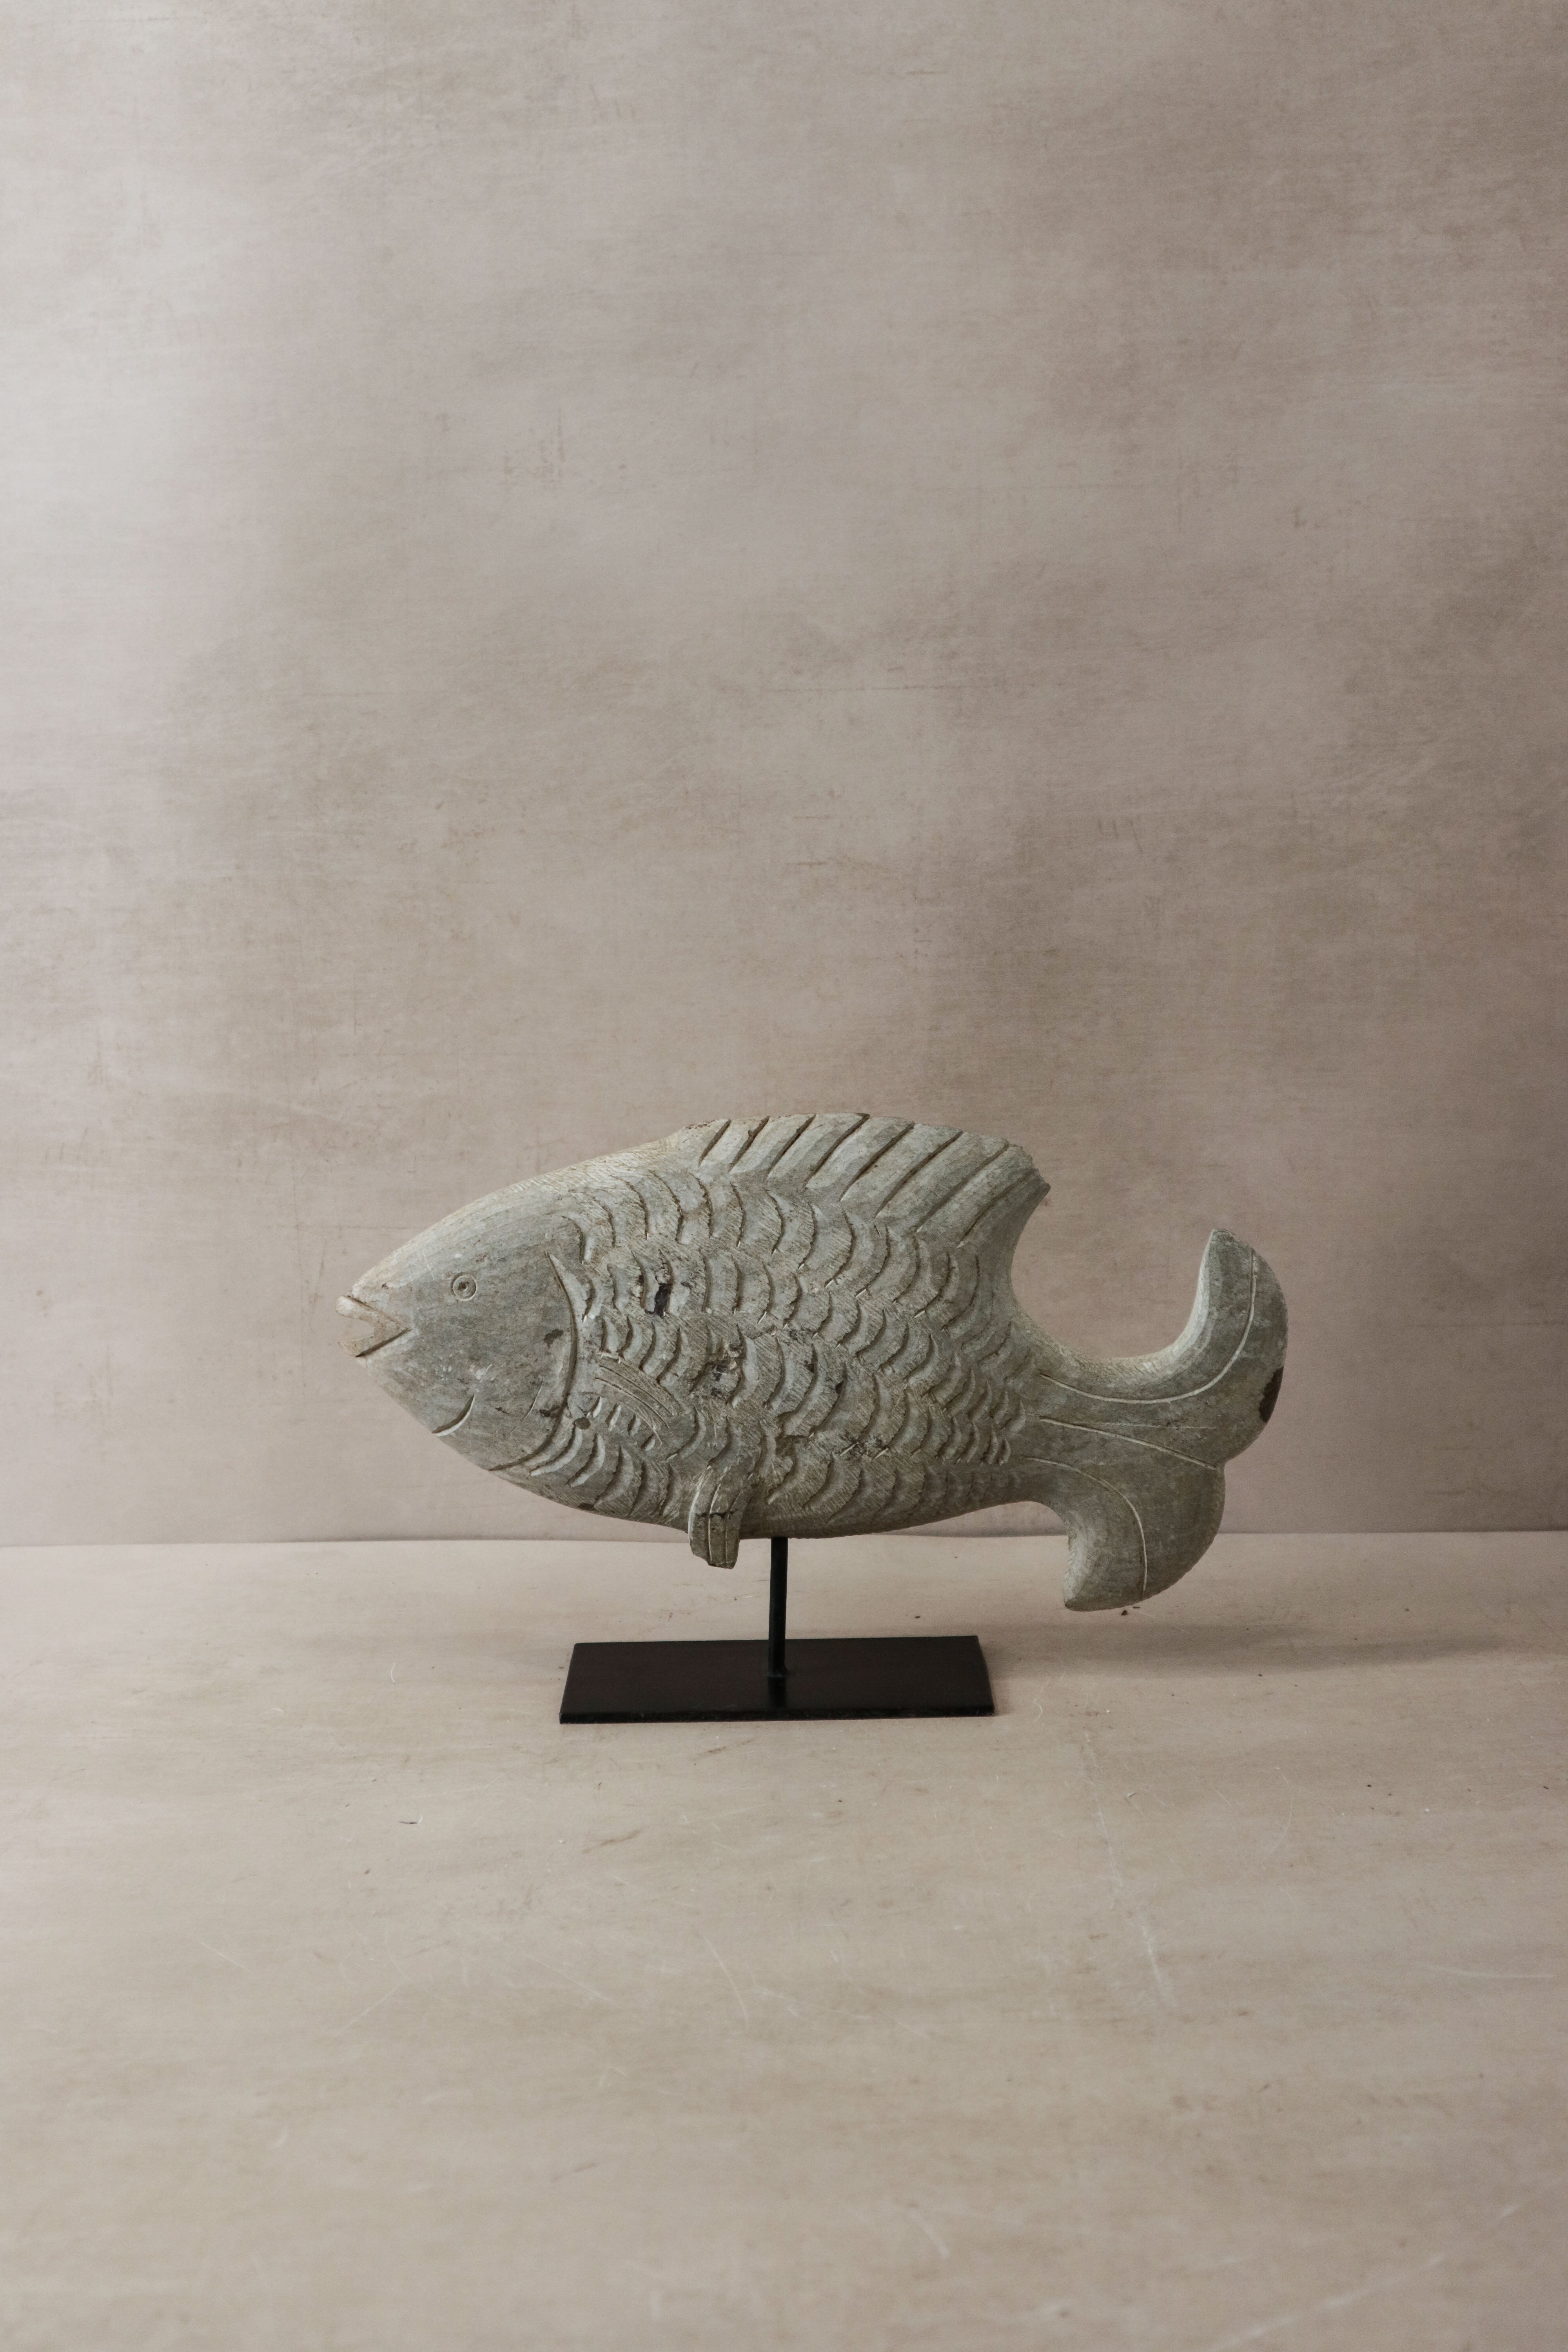 botanicalboysuk Stone Fish Sculpture - Zimbabwe - 37.1